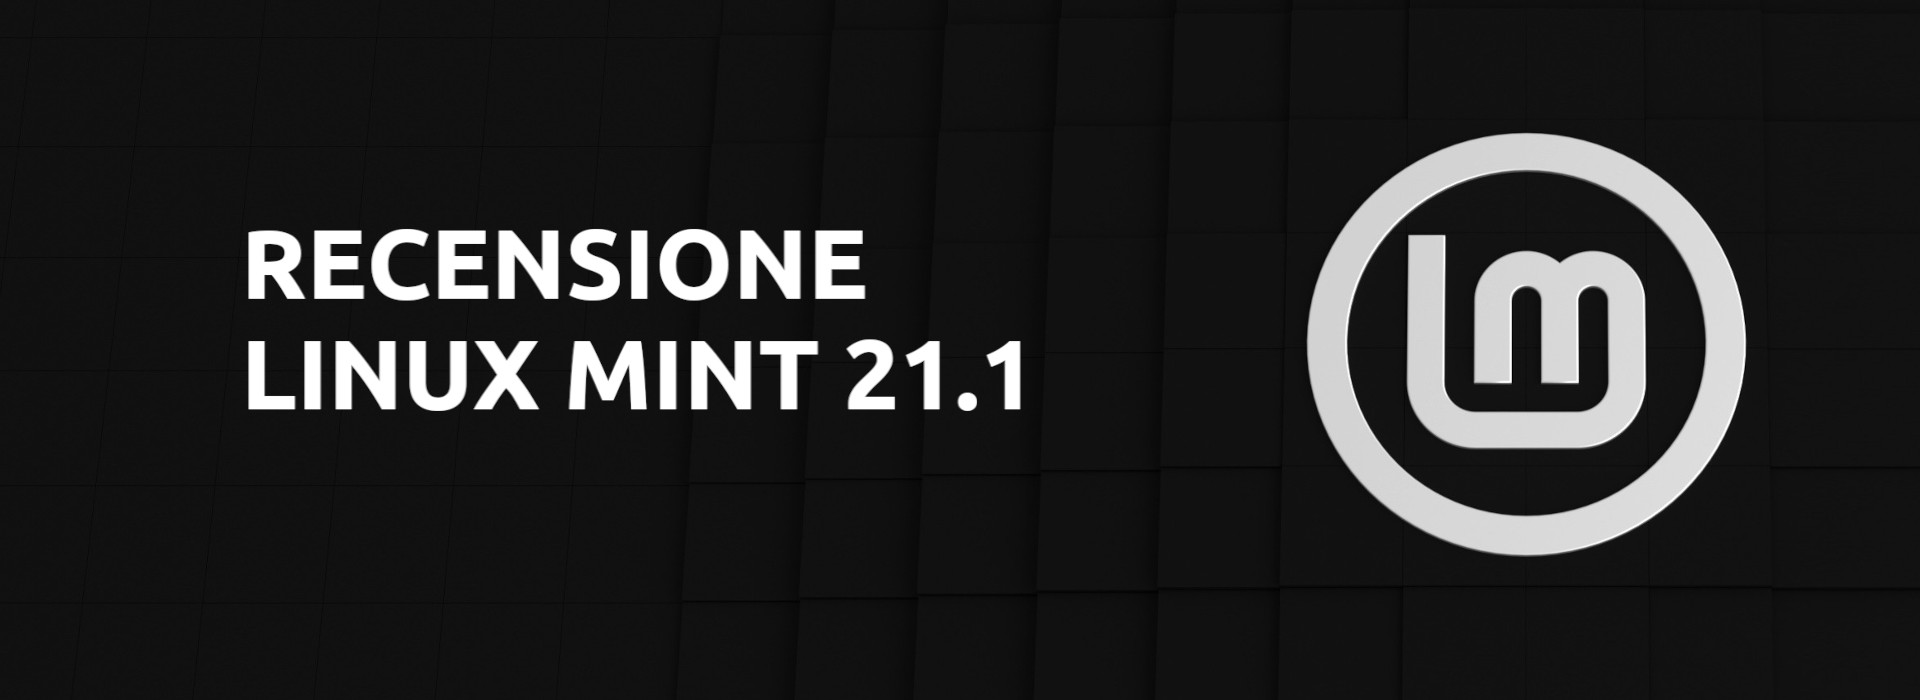 Recensione Linux Mint 21.1 copertina